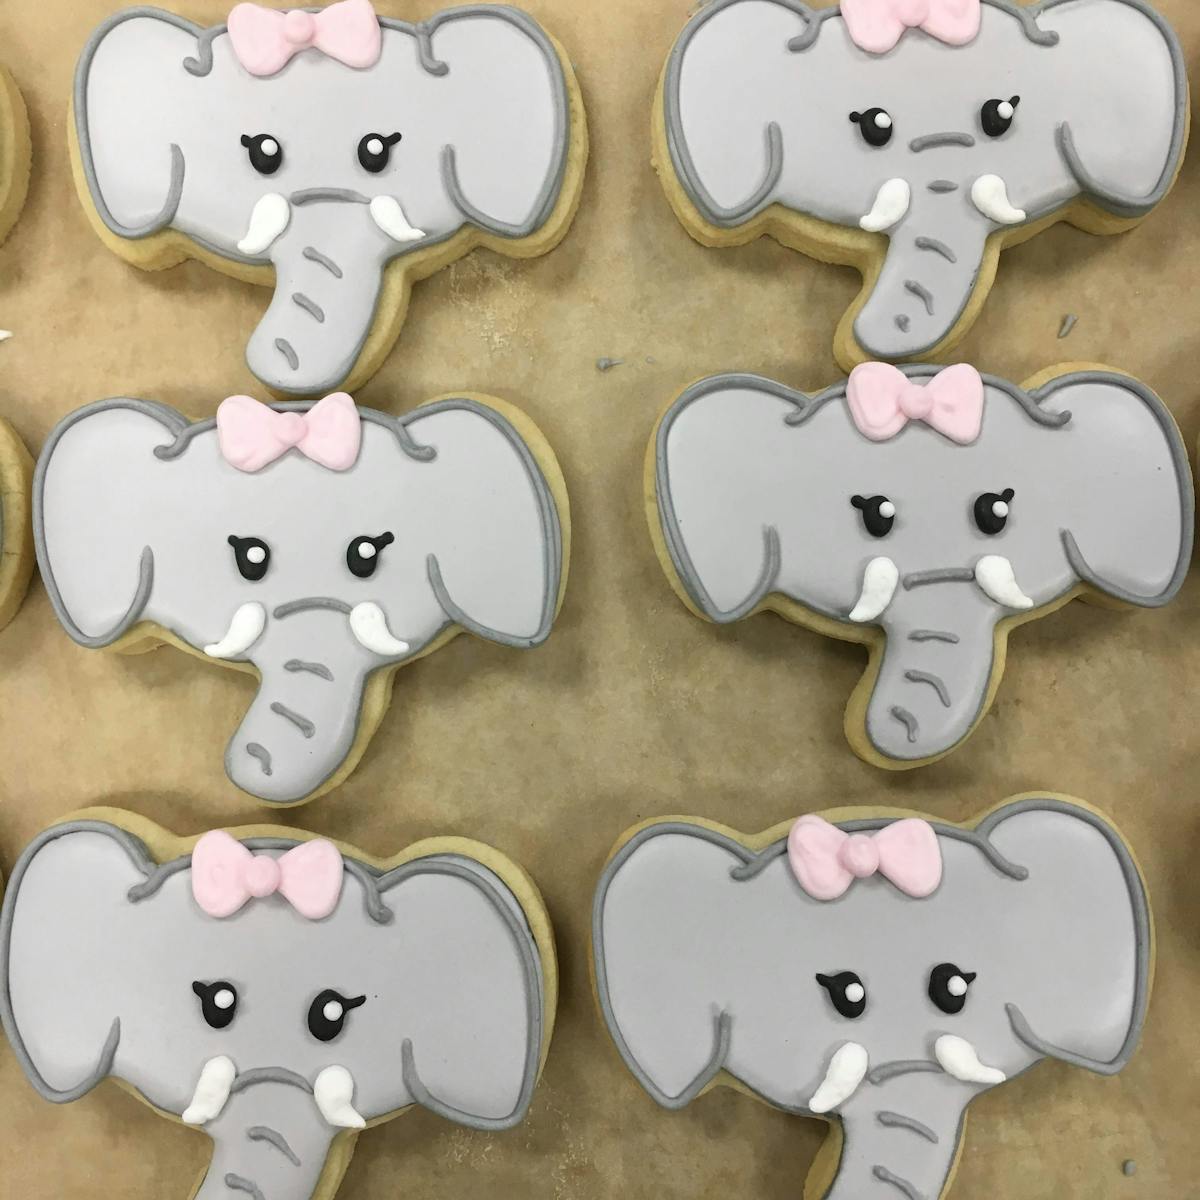 elephant-shaped cookies